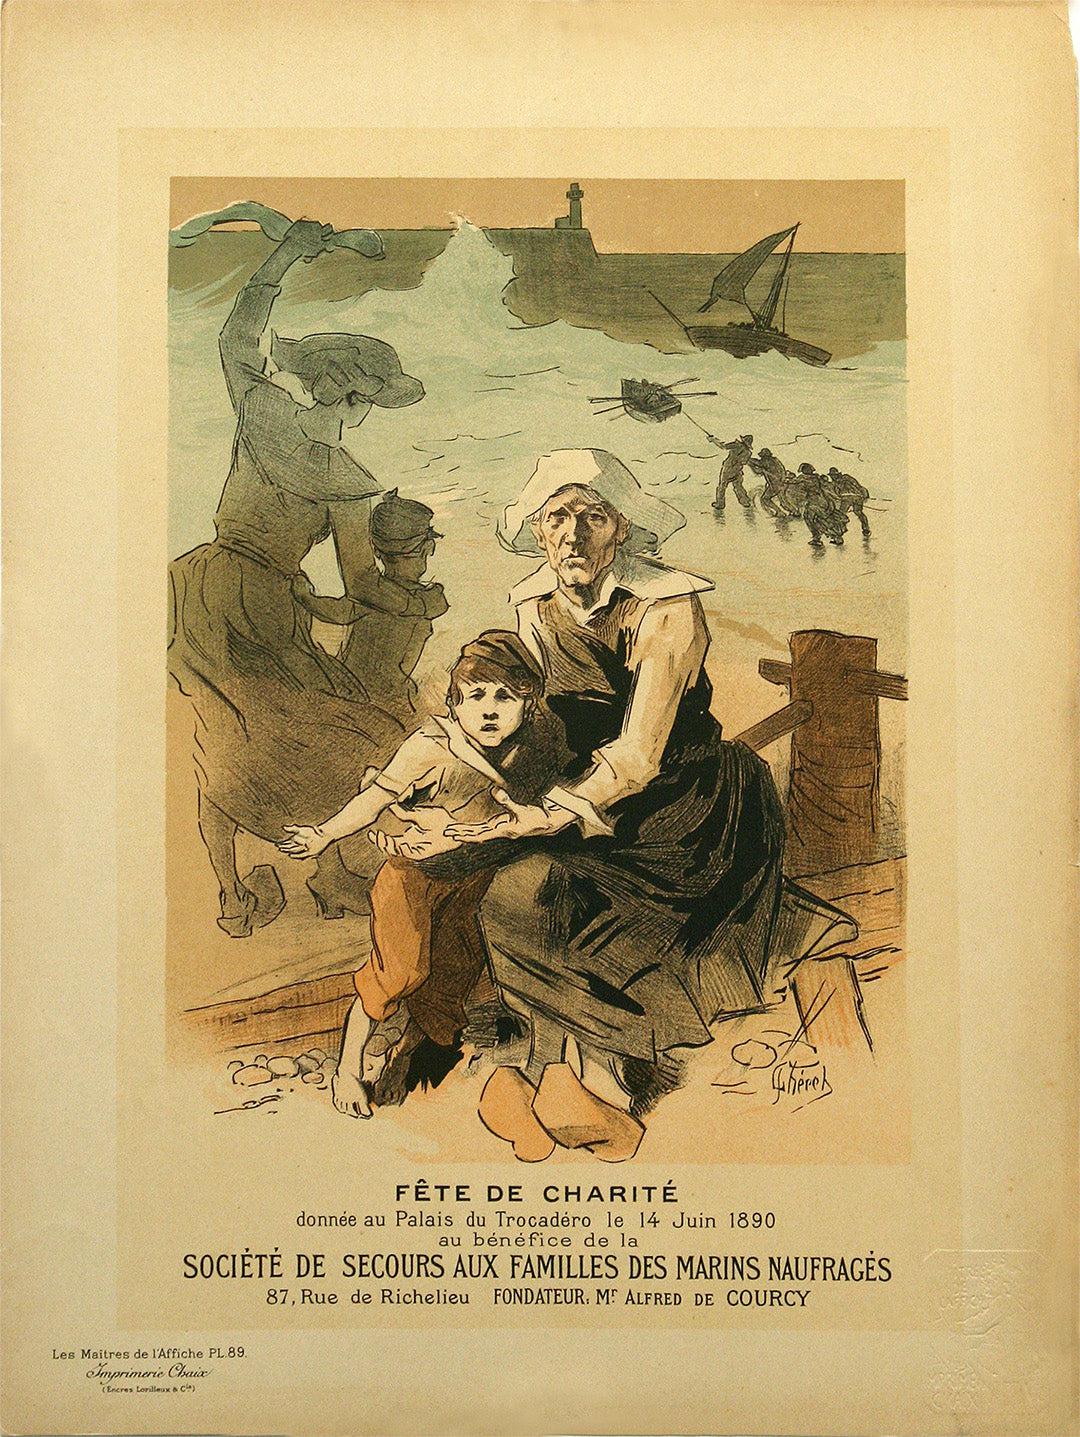 Original Vintage Maitre de l'Affiche Pl 89 Jules Cheret Fete de Charite 1897